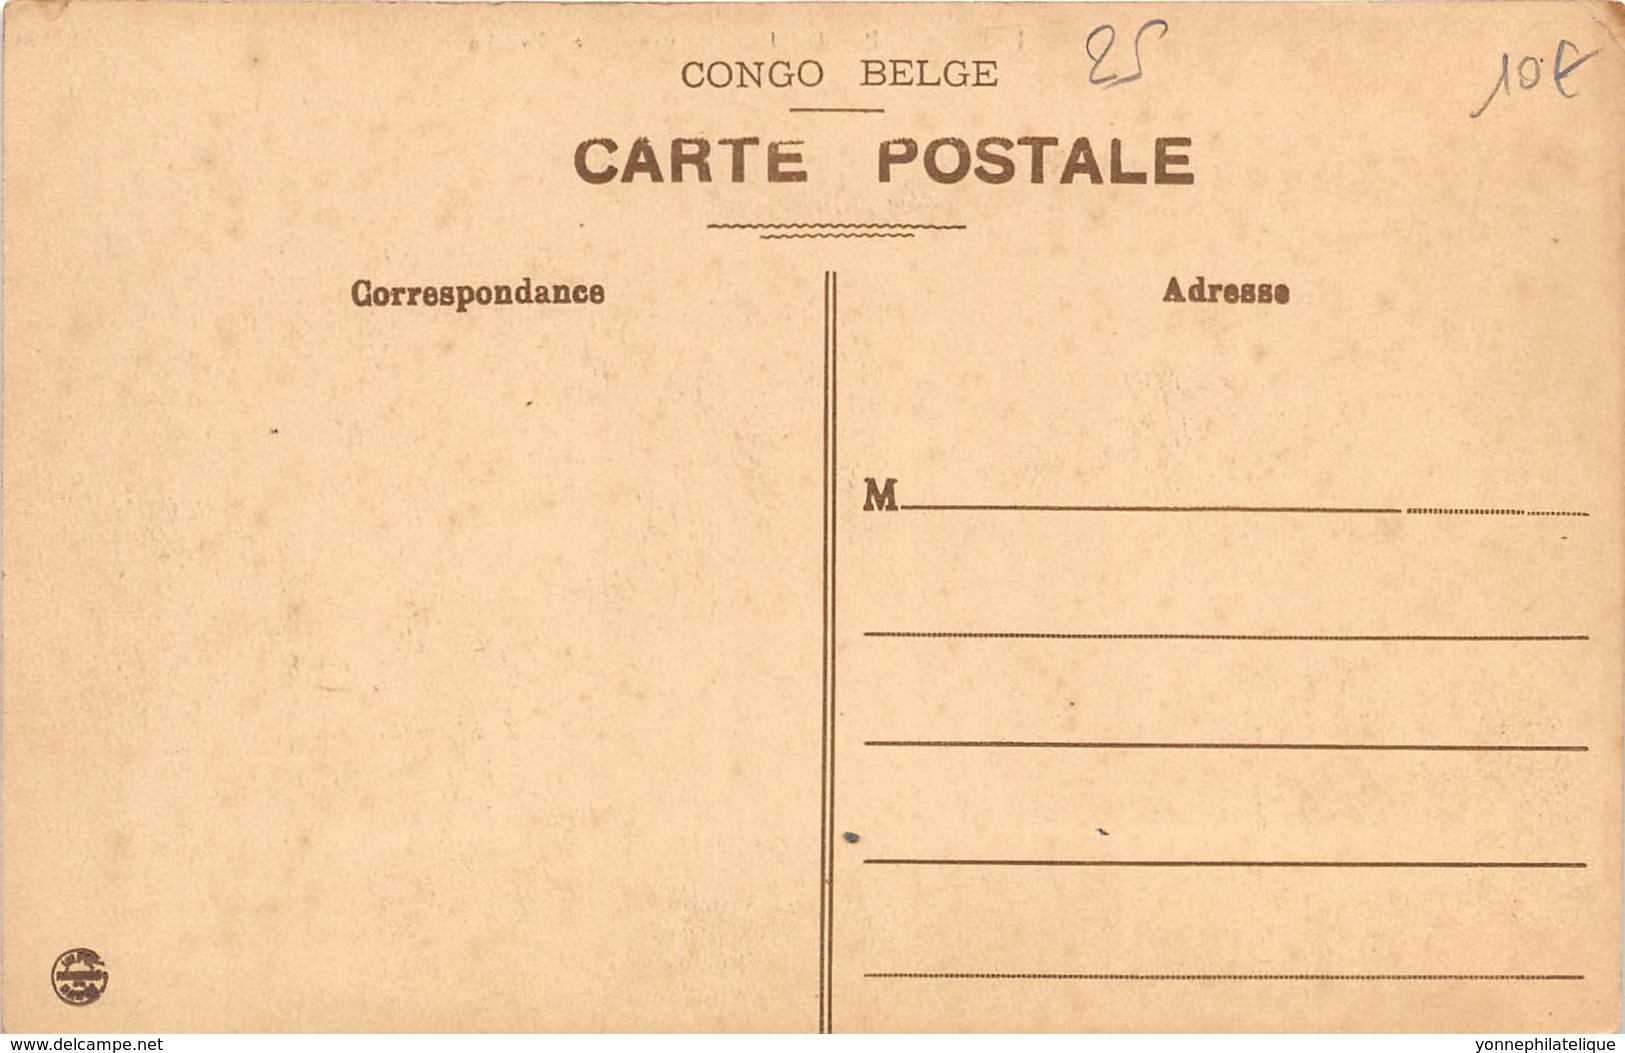 Congo -  Leopoldville / 25 - Avenue De L' Evêché - Kinshasa - Leopoldville